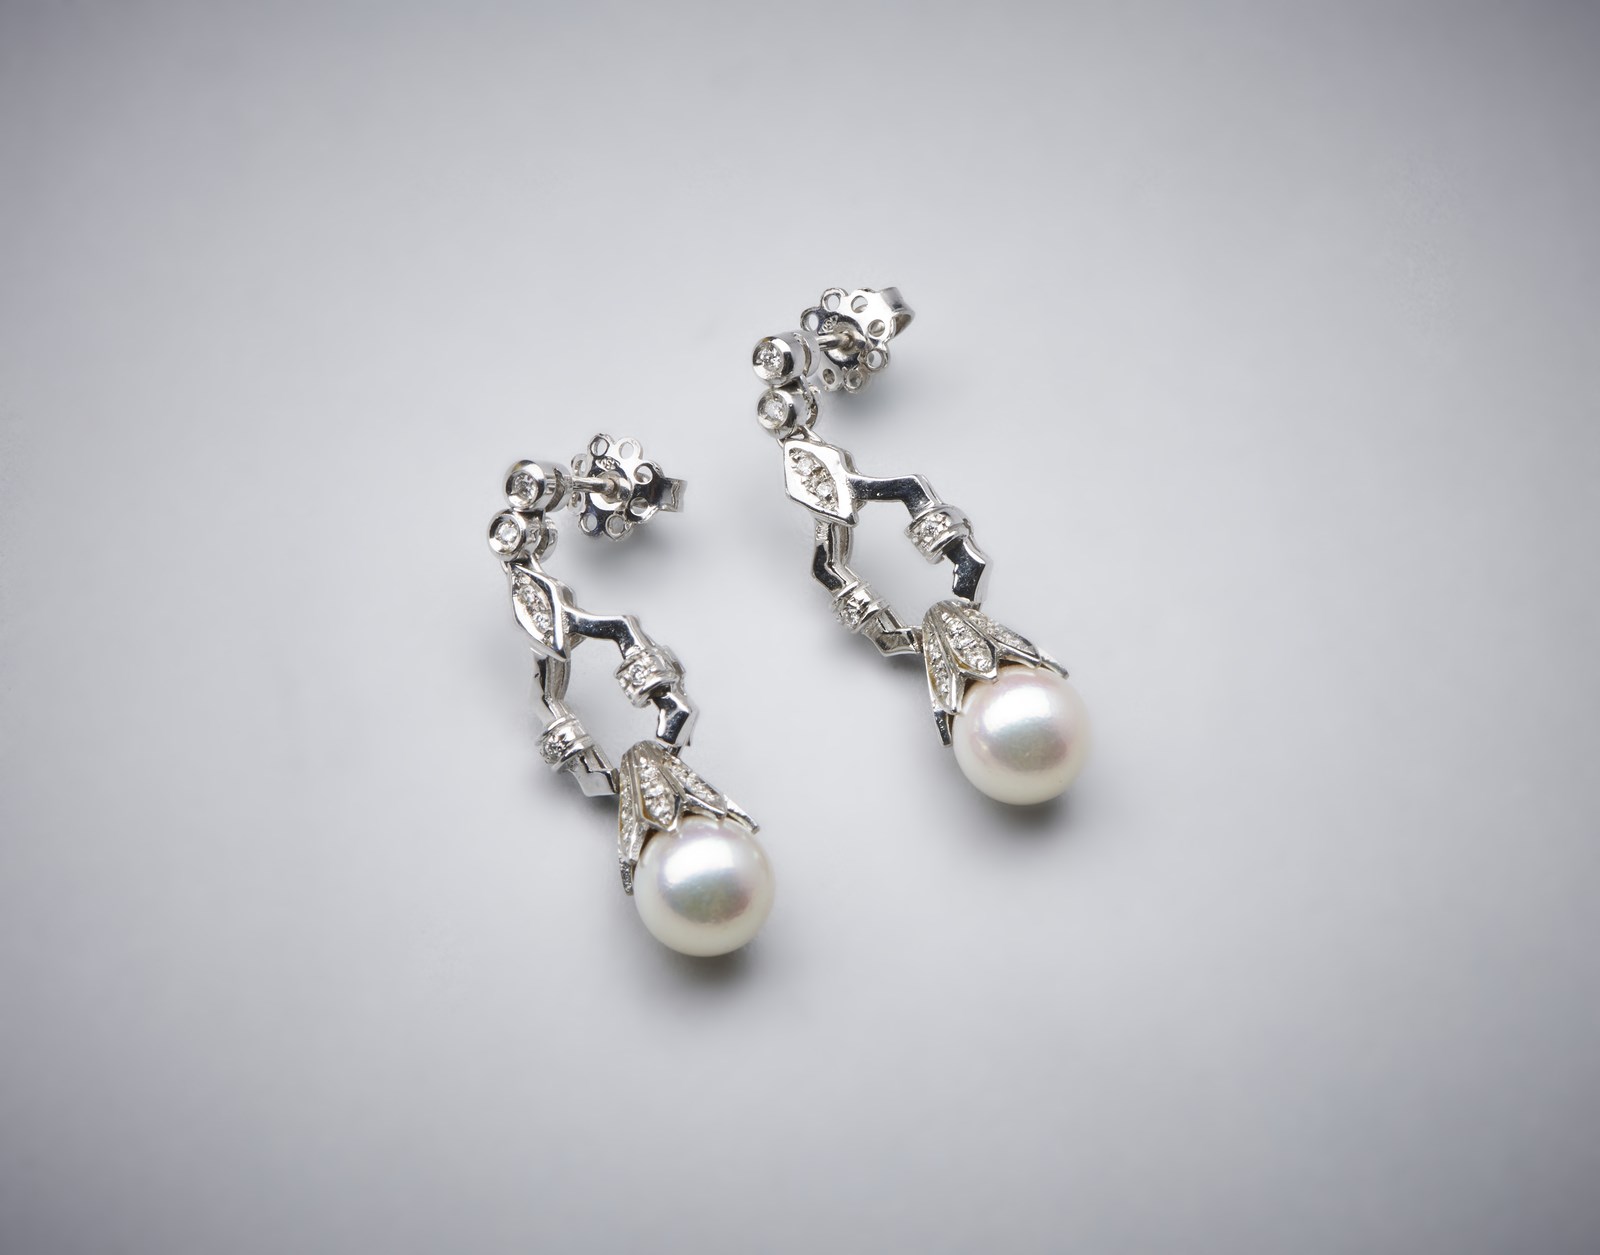 Orecchini pendenti in oro bianco 750/1000 con coppia di perle sferiche bianche coltivate di mm 8,50 e piccoli diamanti bianchi di taglio misto di 0,80 ct circa. (. )